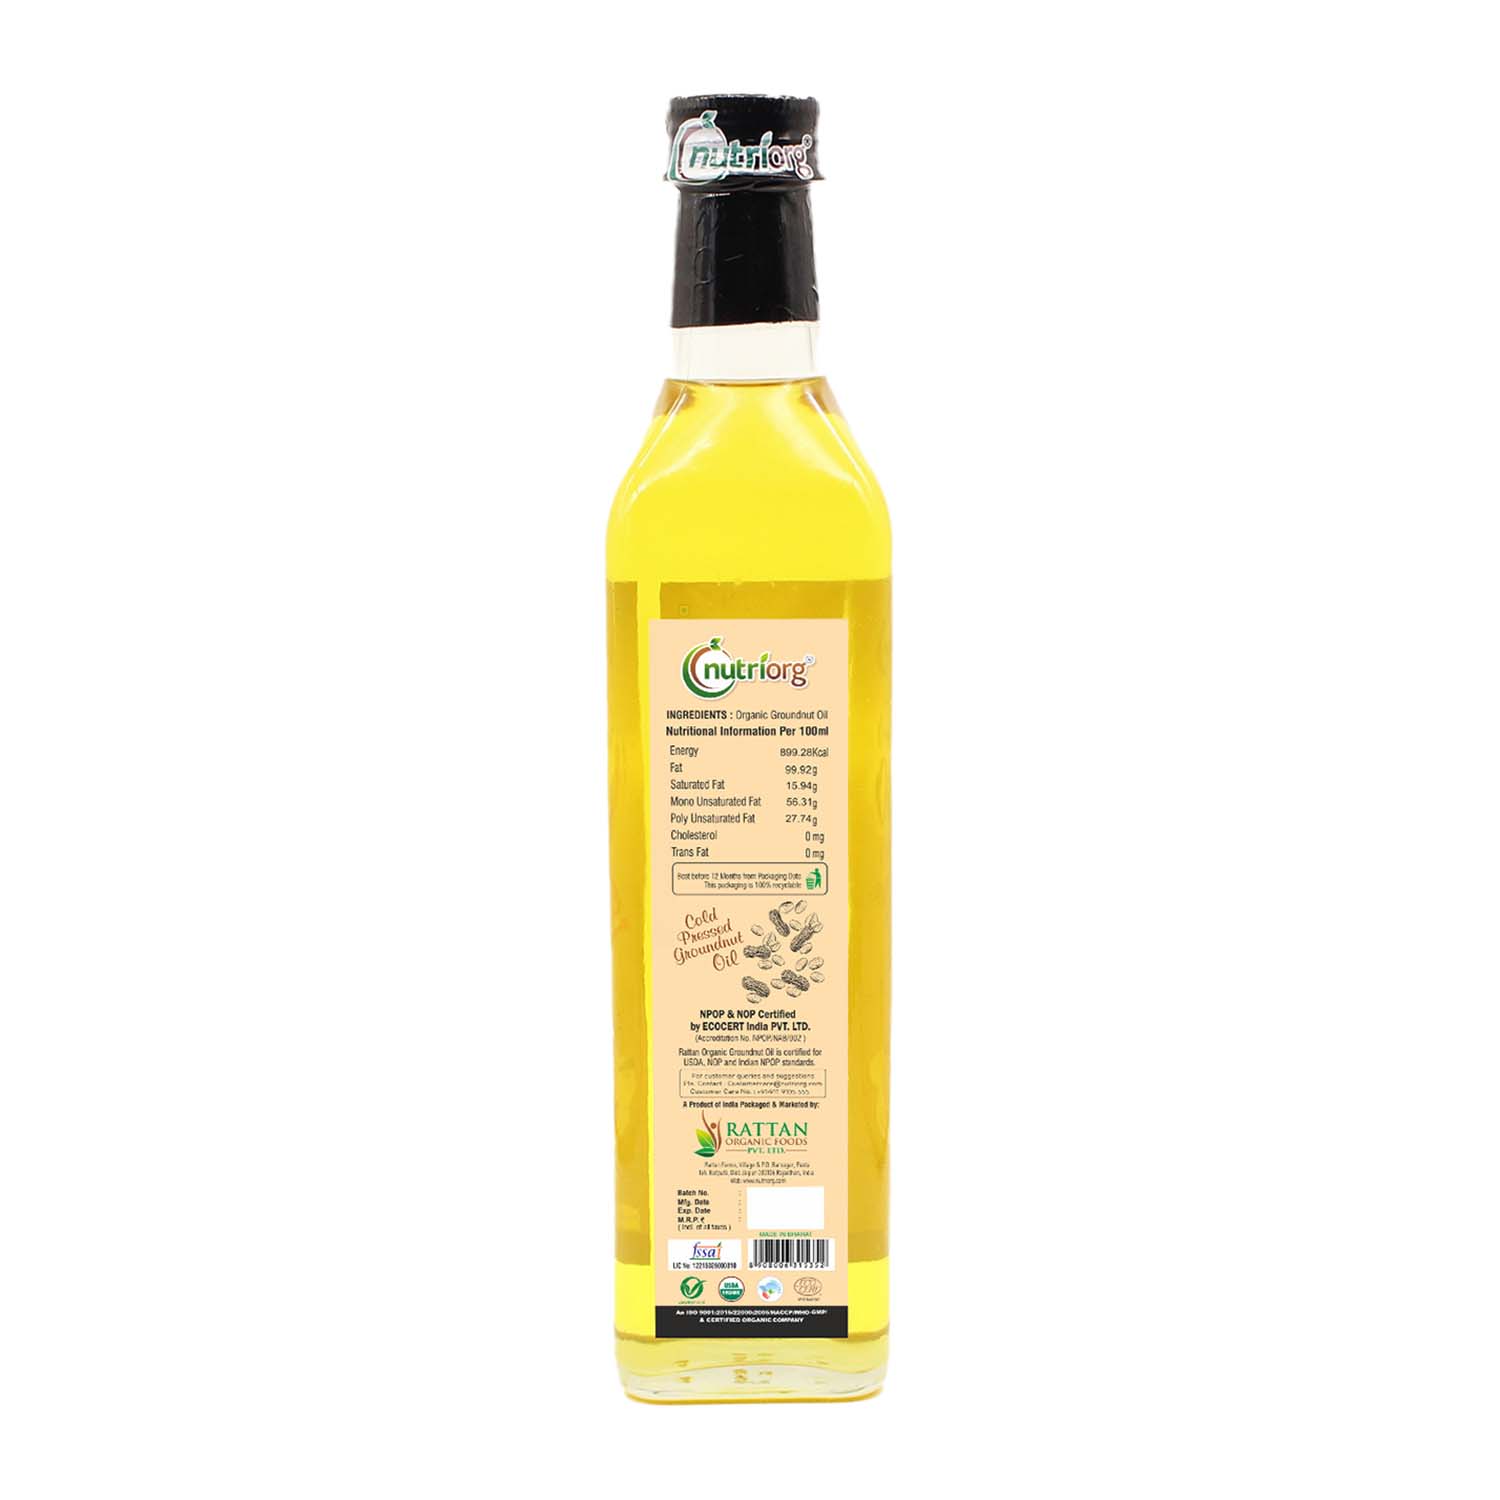 Organic Groundnut Oil 500ml Glass Bottle